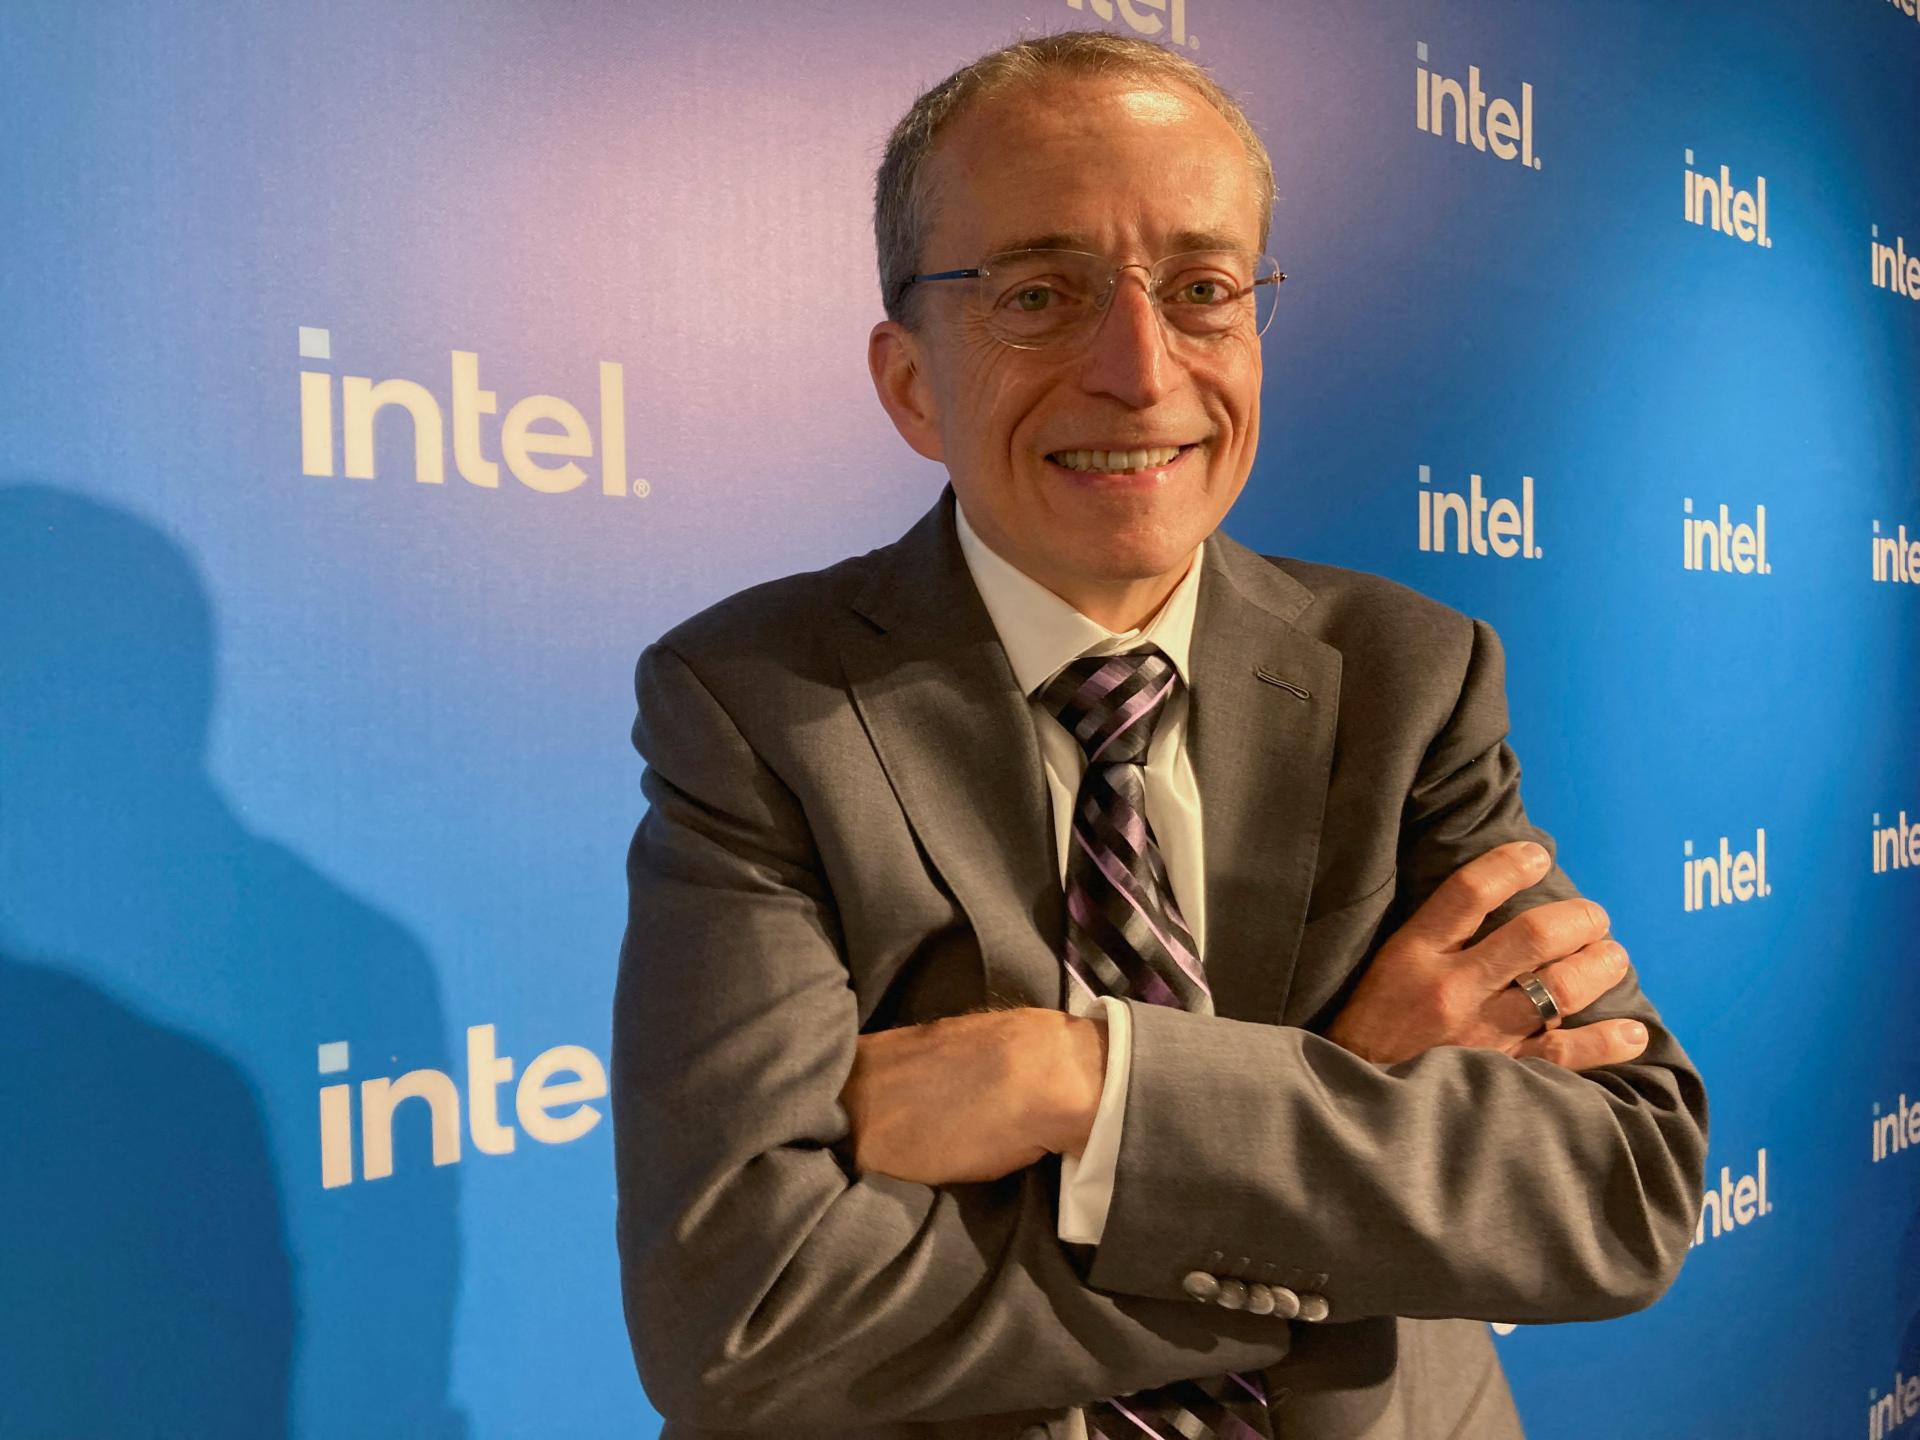 Polski minister broni wsparcia państwa dla inwestycji Intela